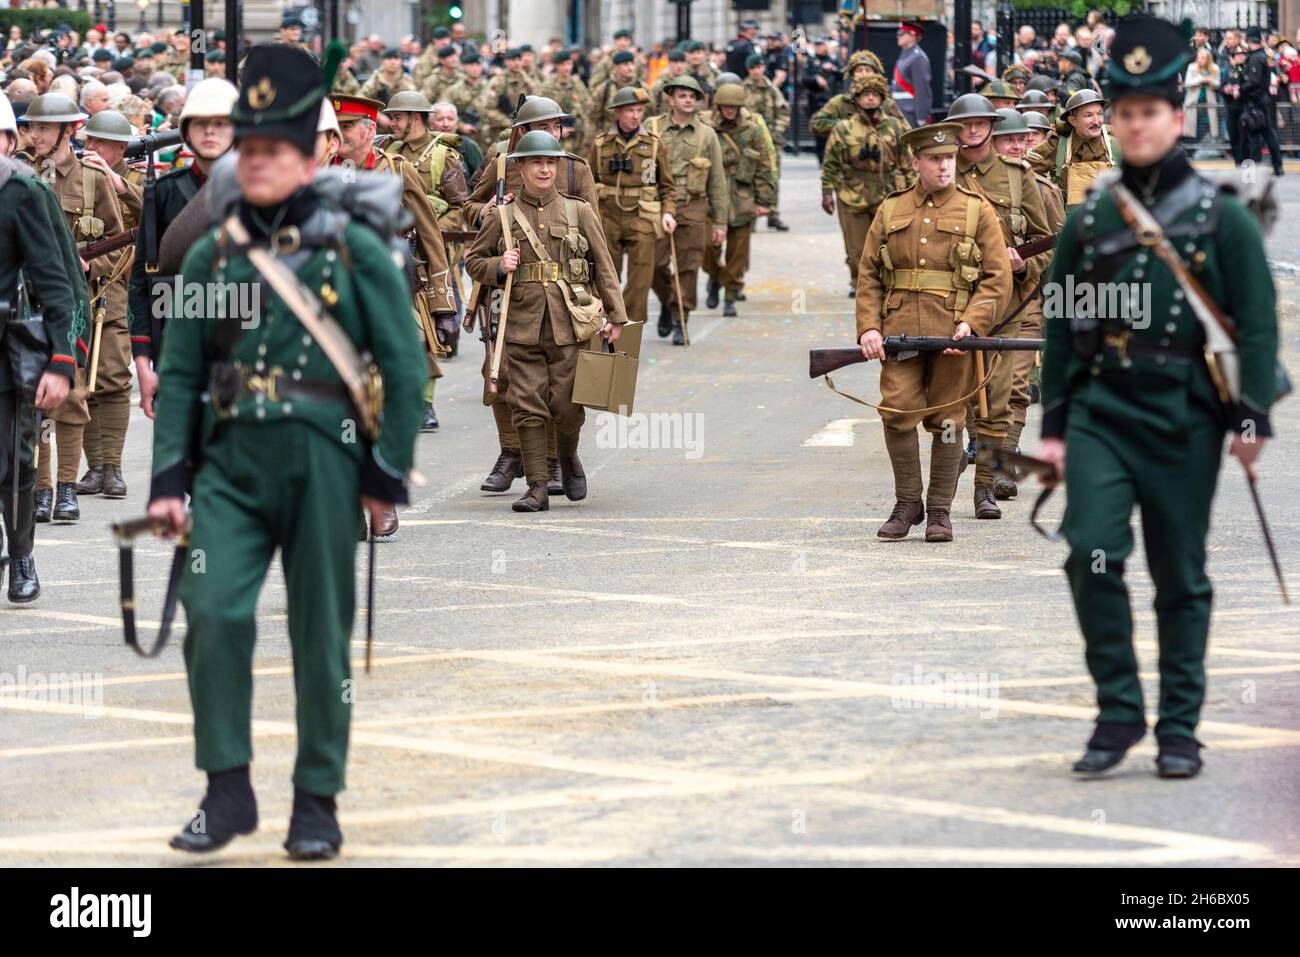 The London Regiment en uniformes d'époque au Lord Mayor's Show, Parade, procession passant le long de Poultry, près de Mansion House, Londres, Royaume-Uni. Banque D'Images